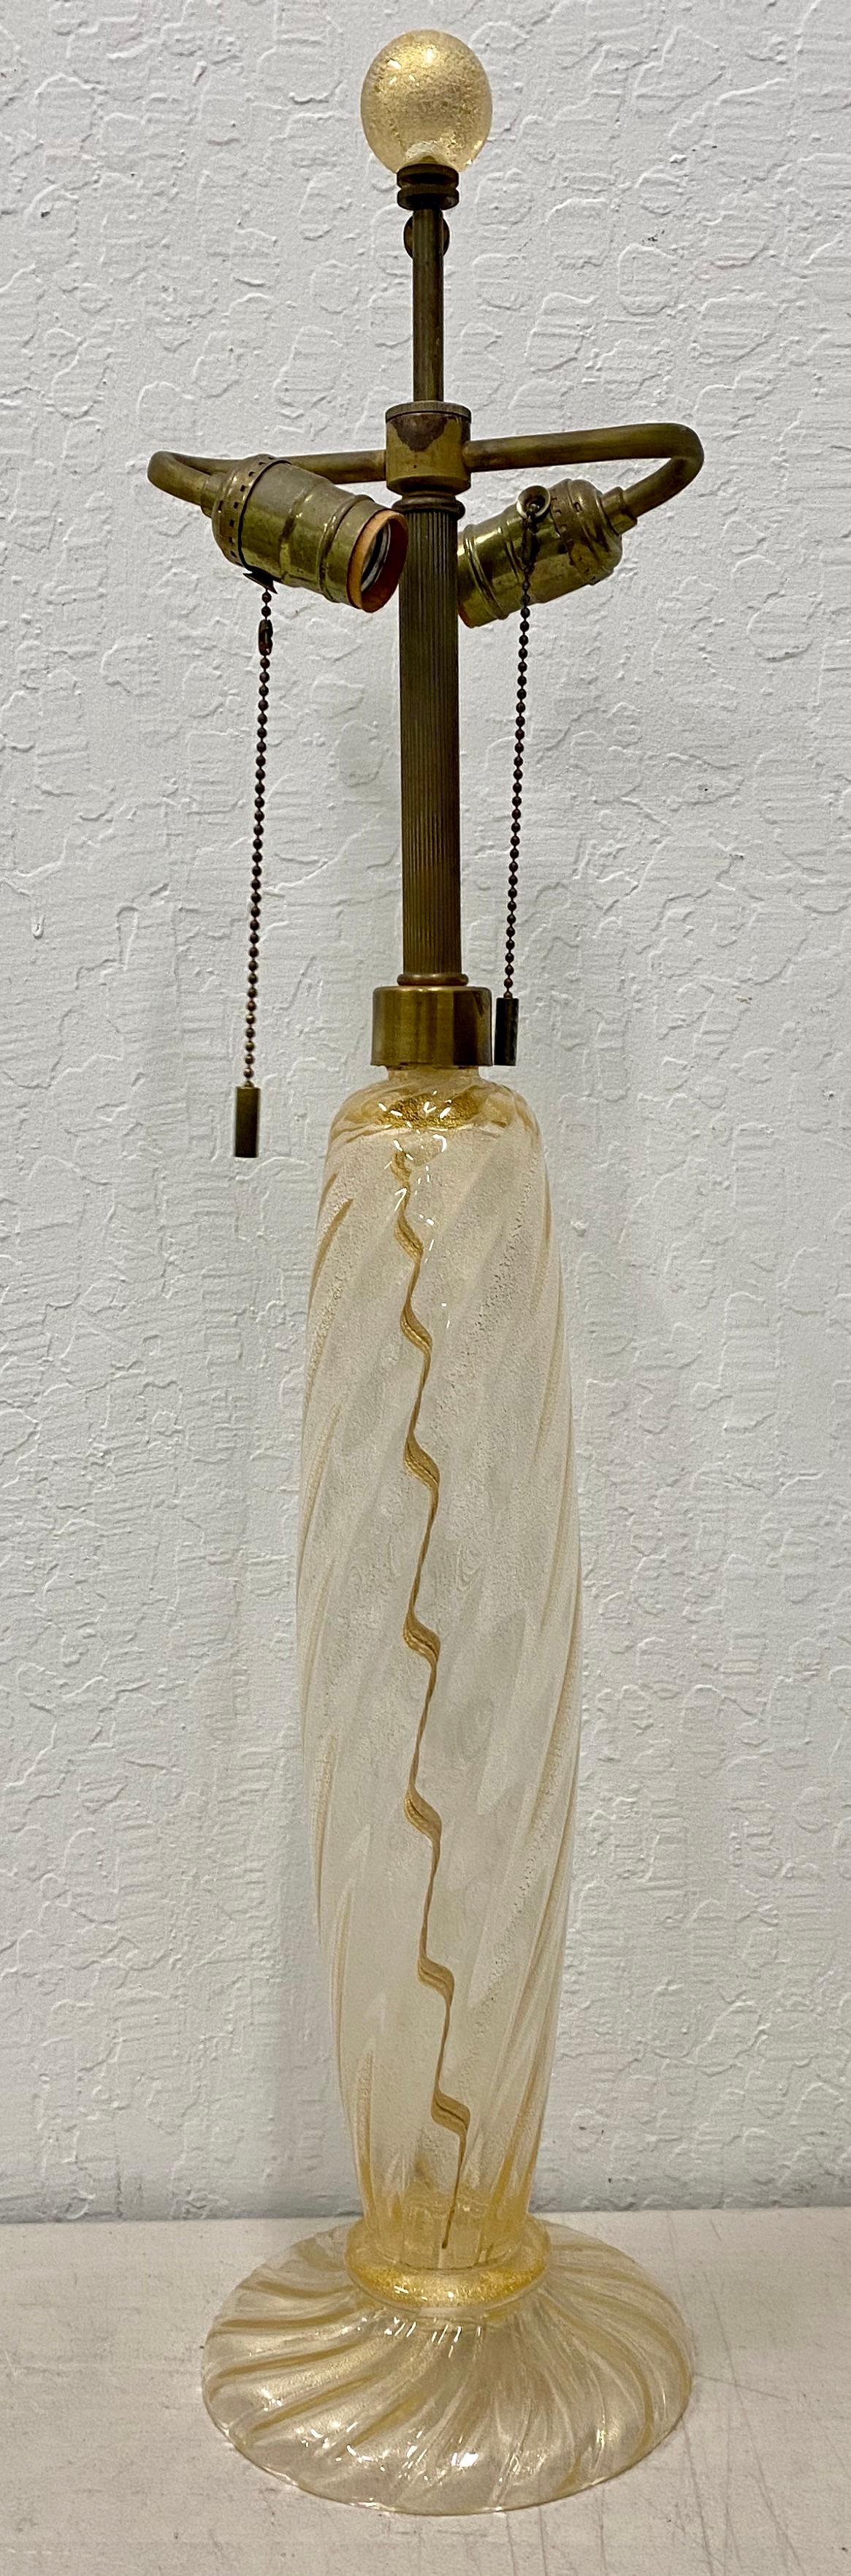 Lampe de table vintage en verre soufflé à la main et moucheté d'or de Murano, circa 1930

Magnifique lampe de table d'Italie

Verre moucheté d'or soufflé à la main avec le fleuron d'origine

Dimensions 7,5